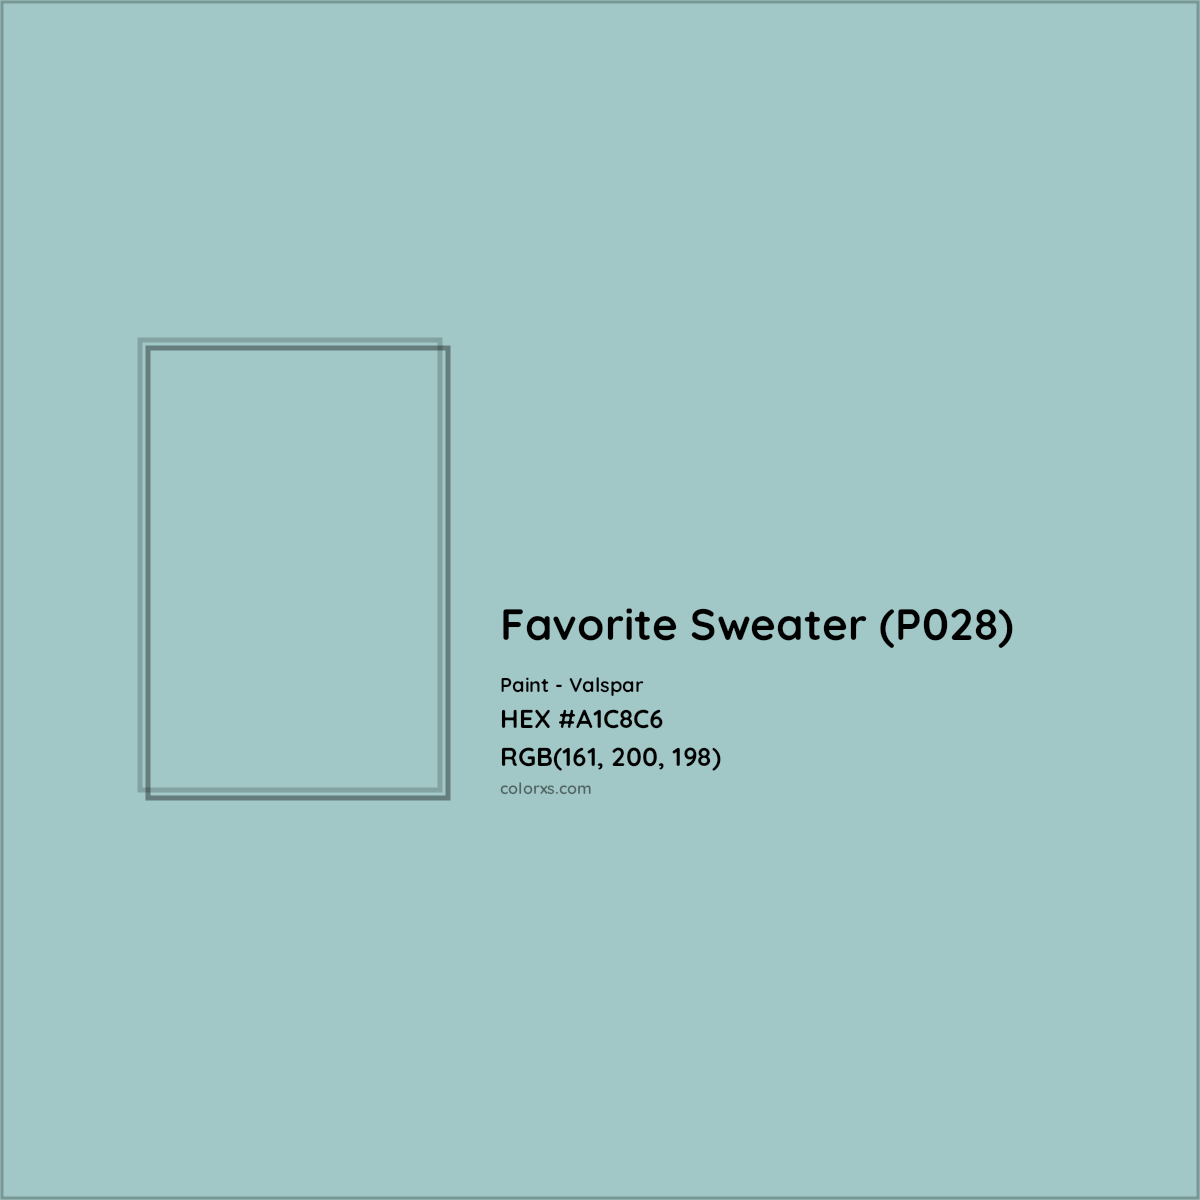 HEX #A1C8C6 Favorite Sweater (P028) Paint Valspar - Color Code